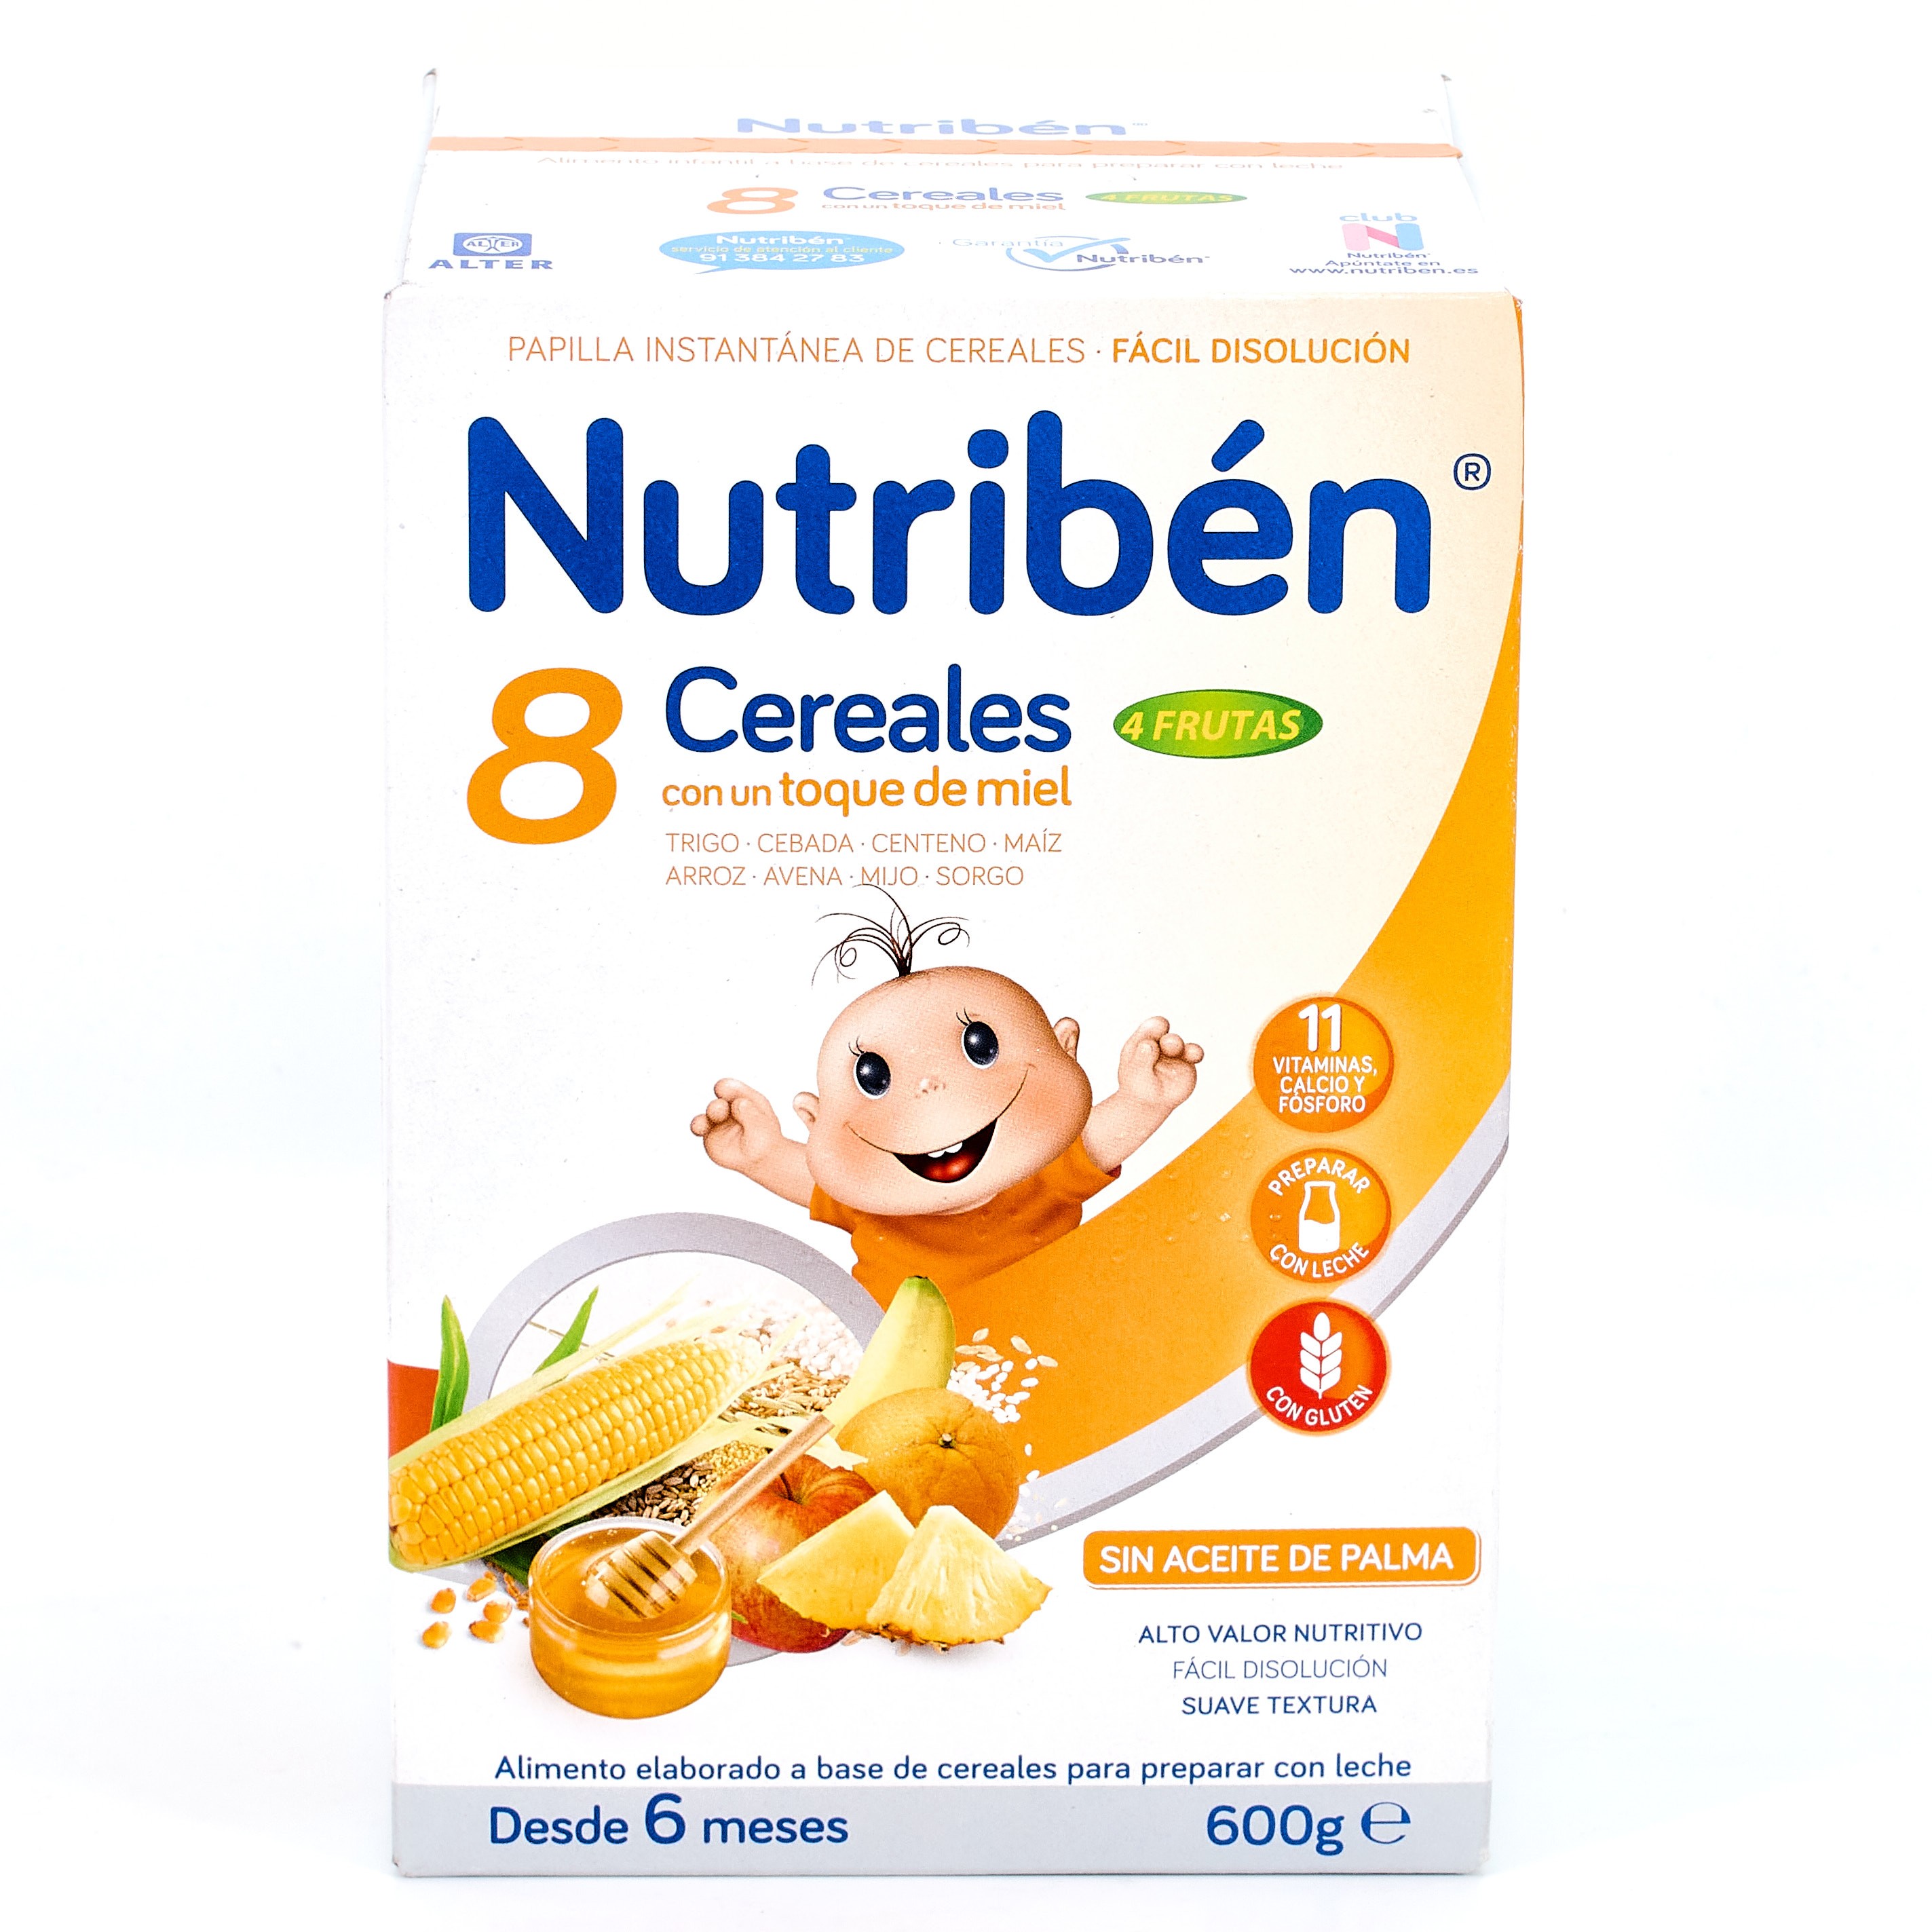 Comprar Nutribén 8 Cereales y Miel 4 Frutas, 600g al mejor precio